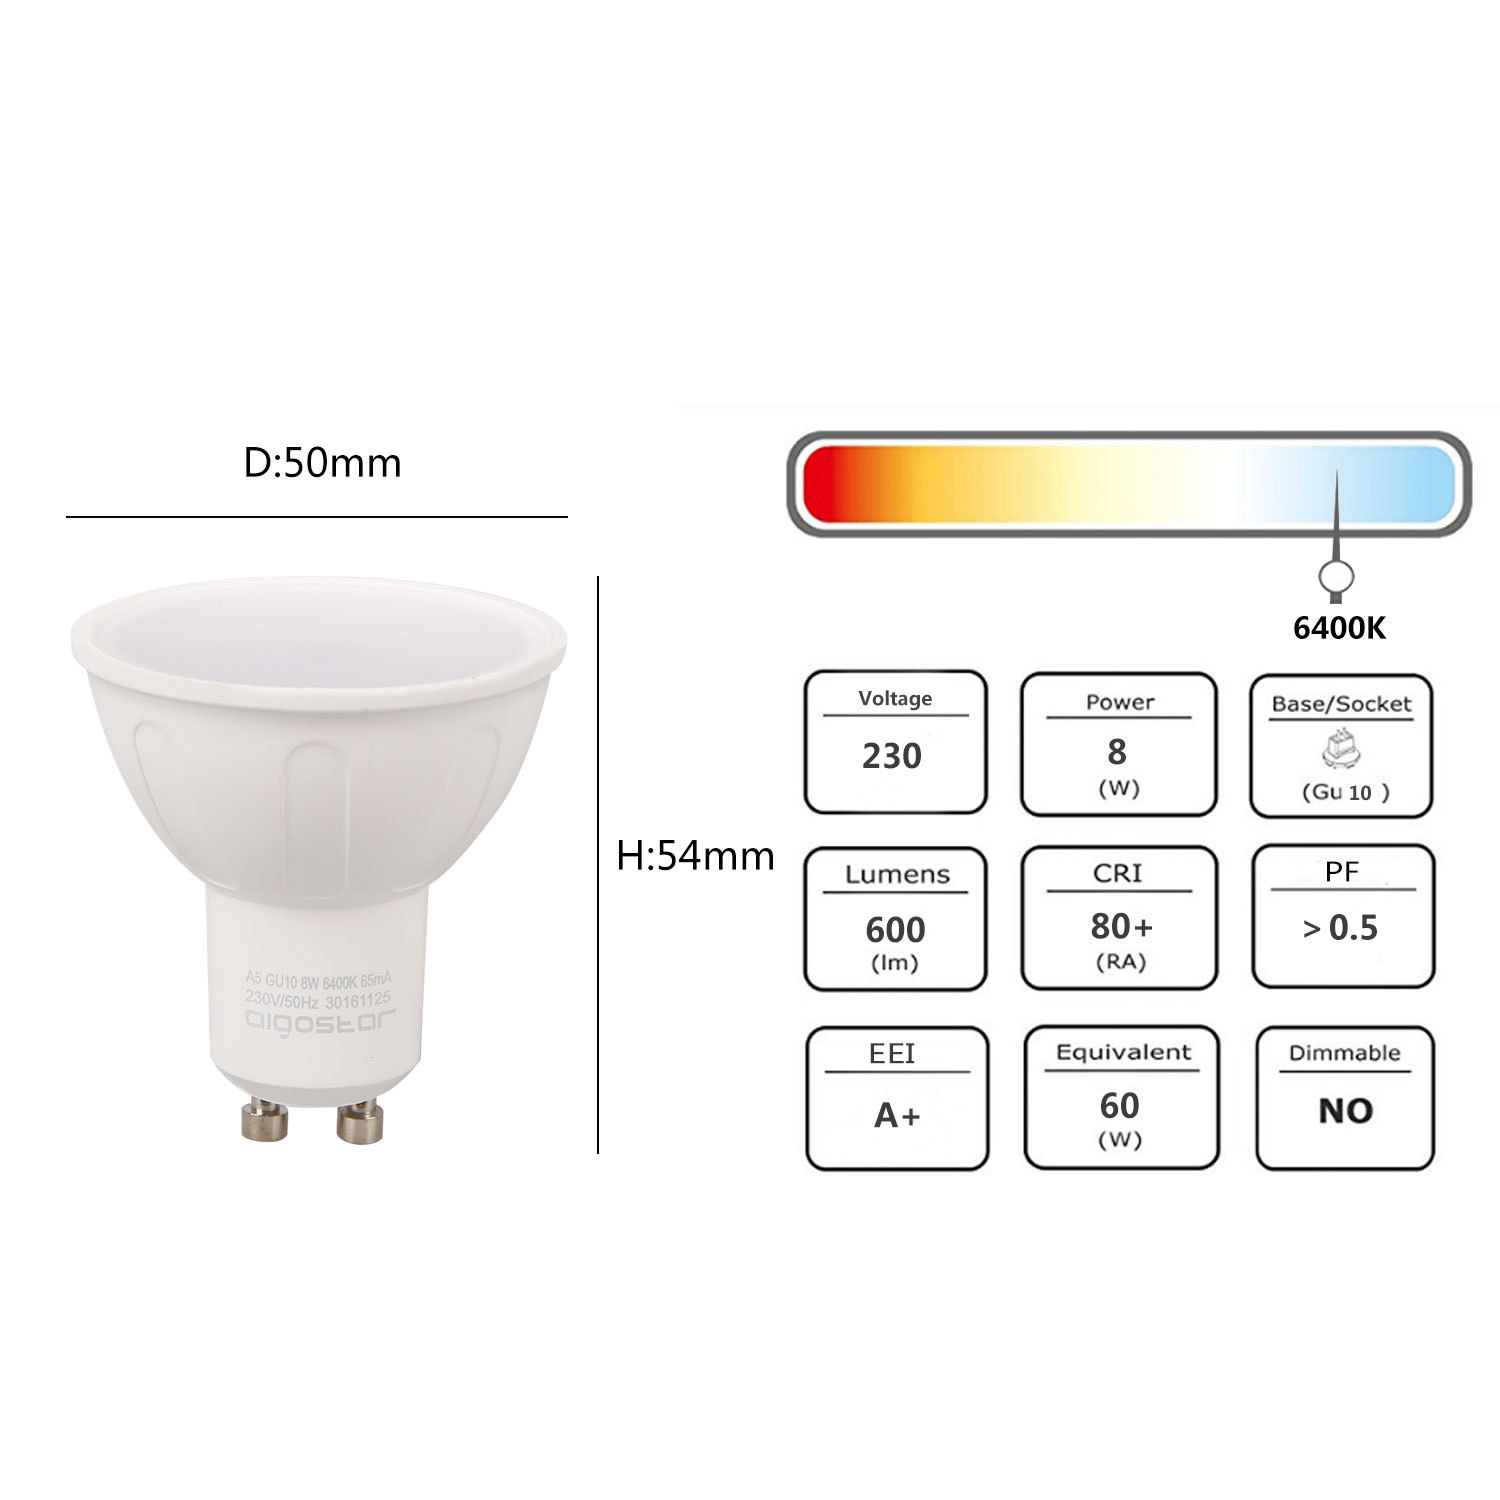 Aigostar -Bombilla LED 8W GU10 ,  Luz blanca fría 6400K, 600lm, 8W Equivalente a 60Watt Lámpara Incandescente,Paquete de 10 Unidades [Clase de eficiencia energética A+]